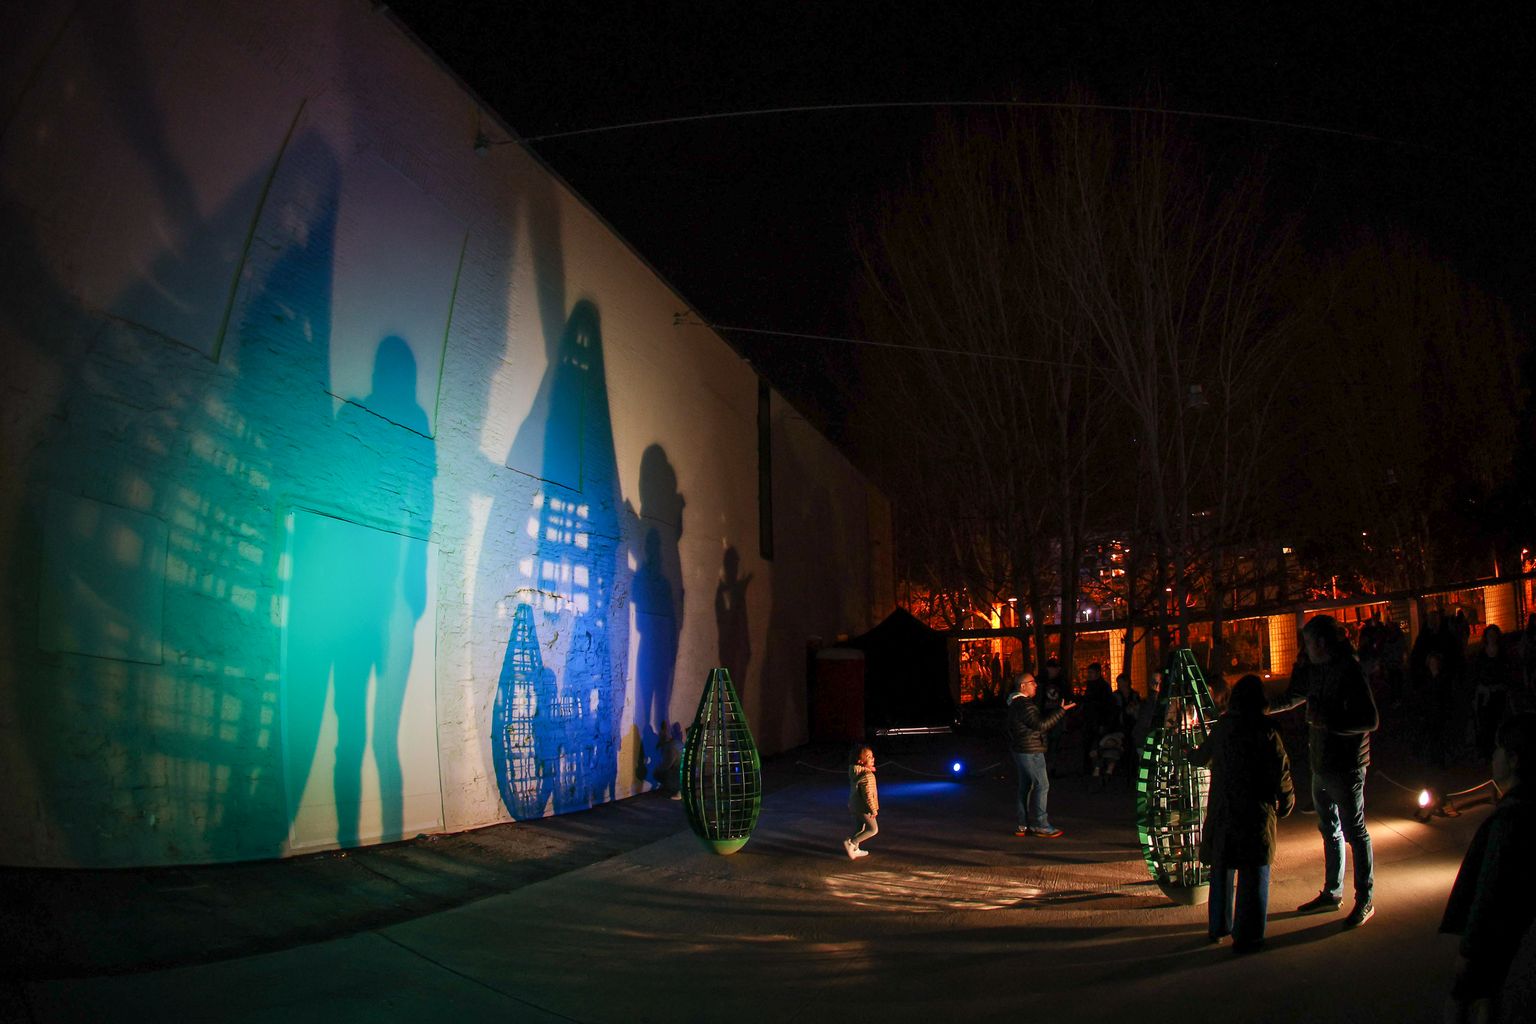 A la paret les ombres de persones passejant al costat de l'obra “Rocking Modules”, per Gijs Coenen